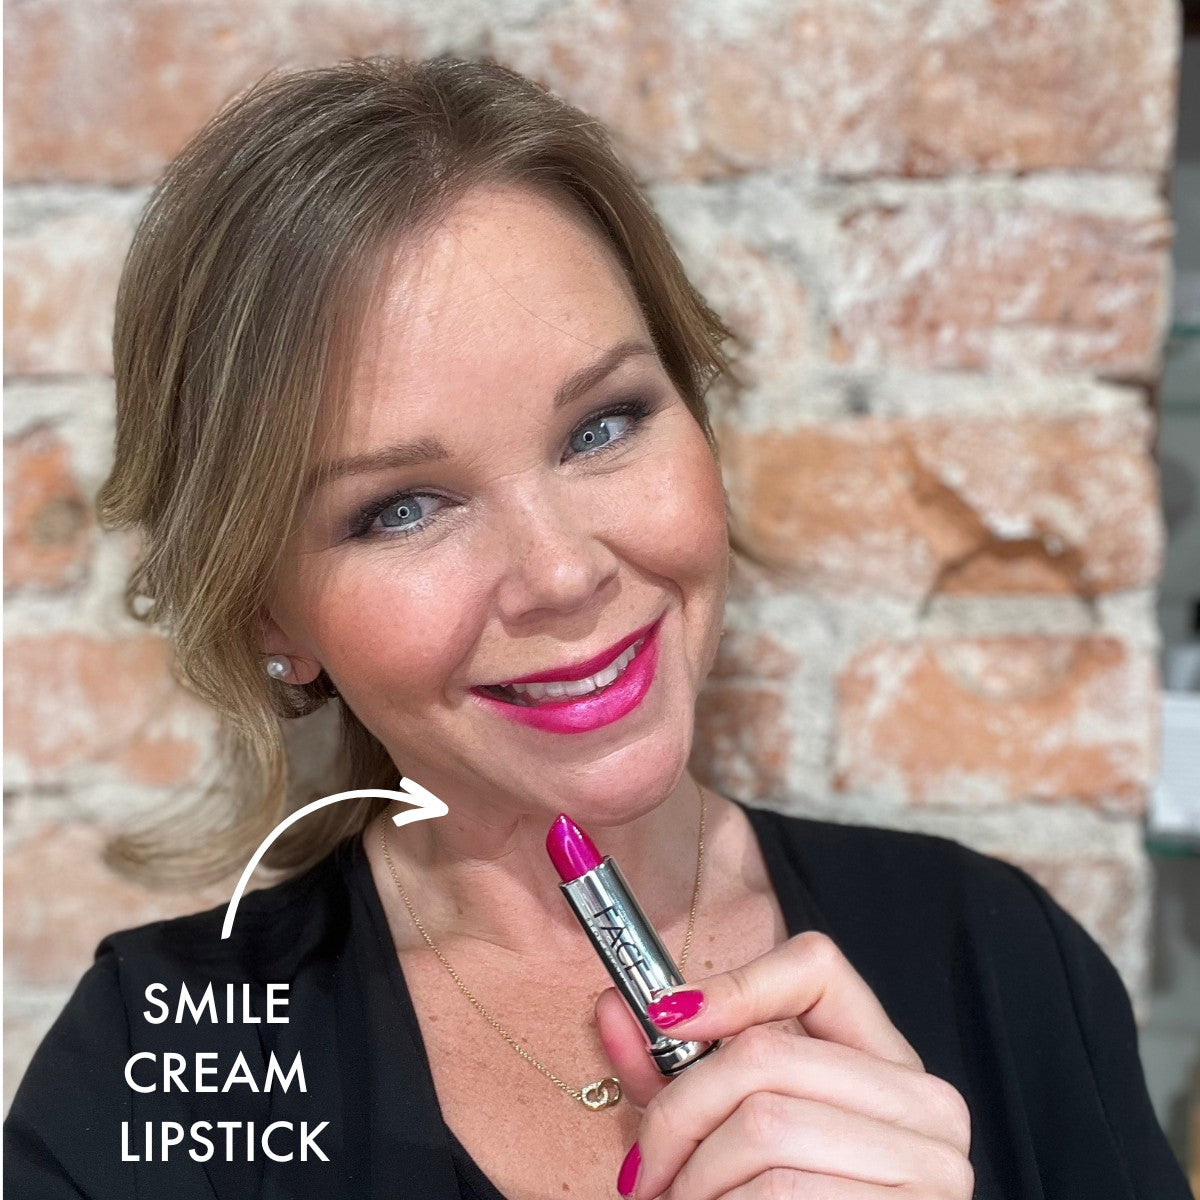 Cream Lipstick Library - Smile